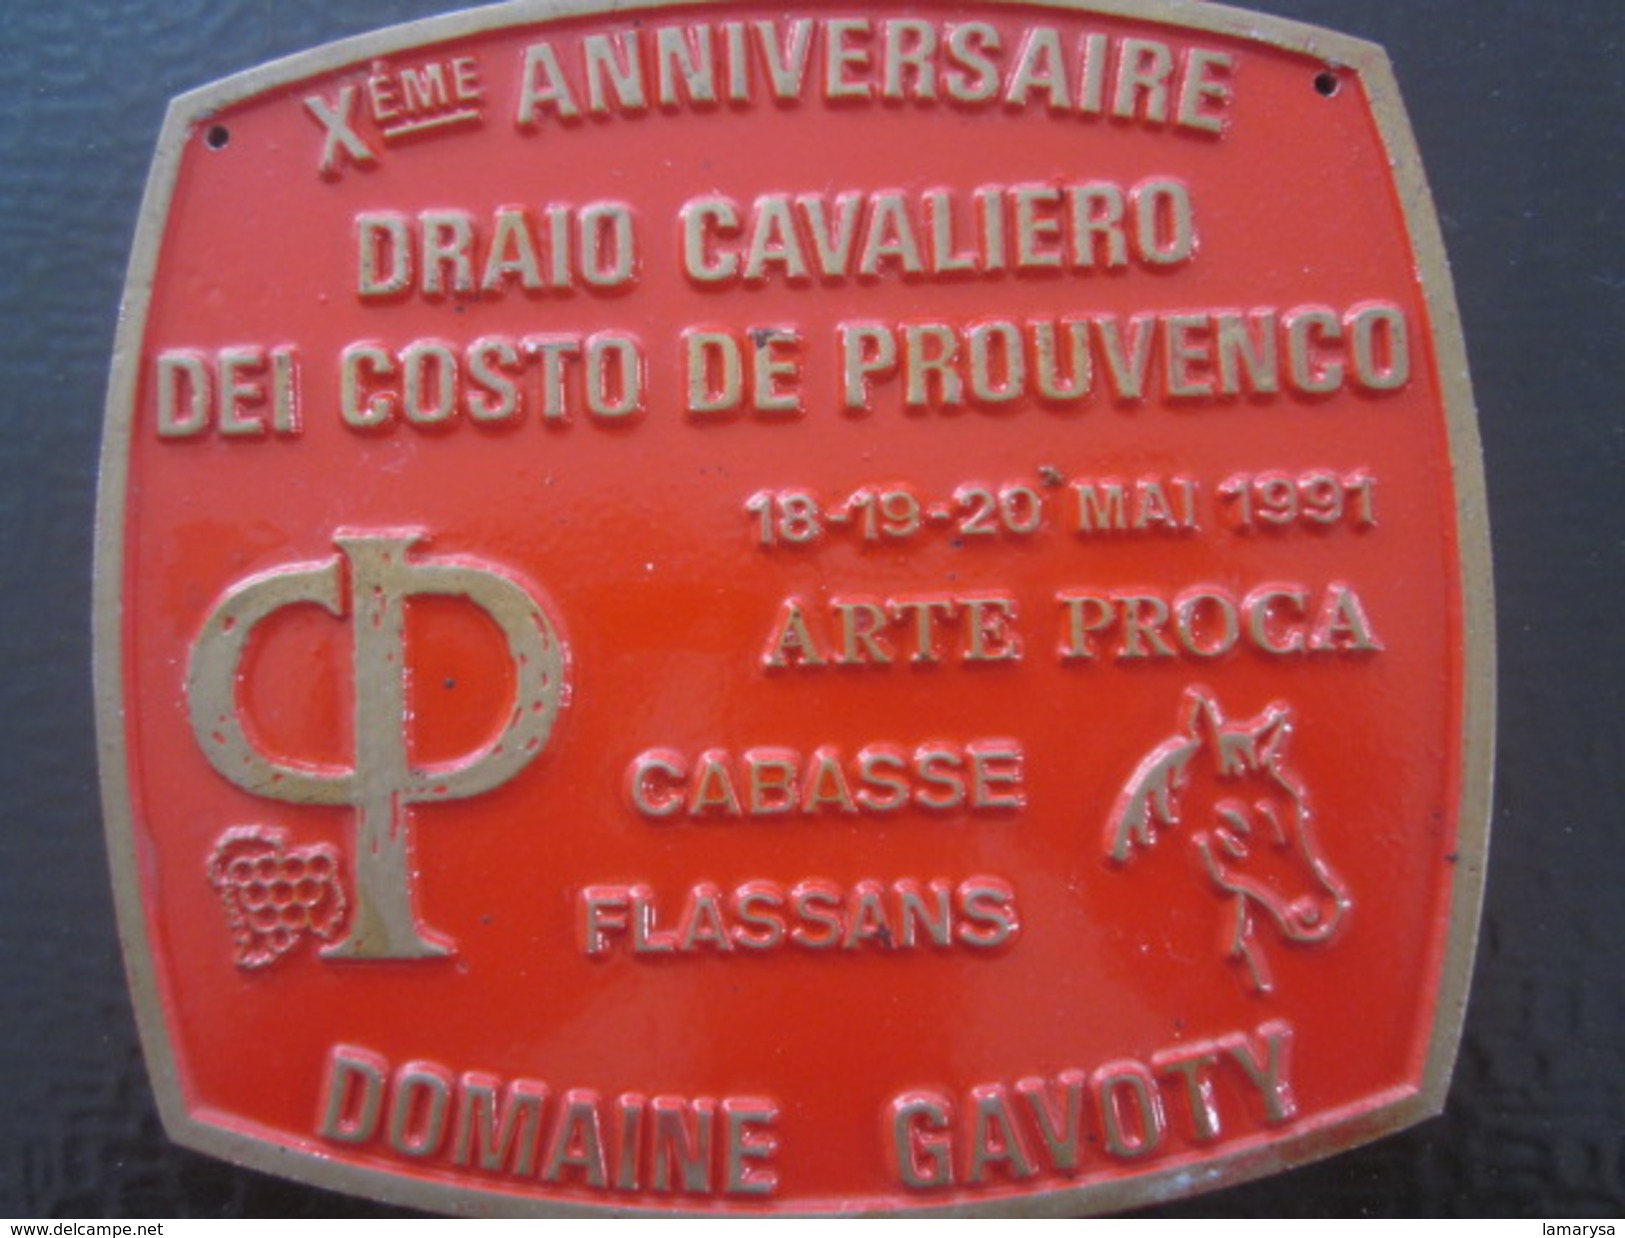 CABASSE FLASSANS Xé AN DRAIO CAVALIERO DEI COSTA DE PROUVENCO-F.F.E.-Équestre Equitation Plaque Souvenir Commémorative - Hipismo